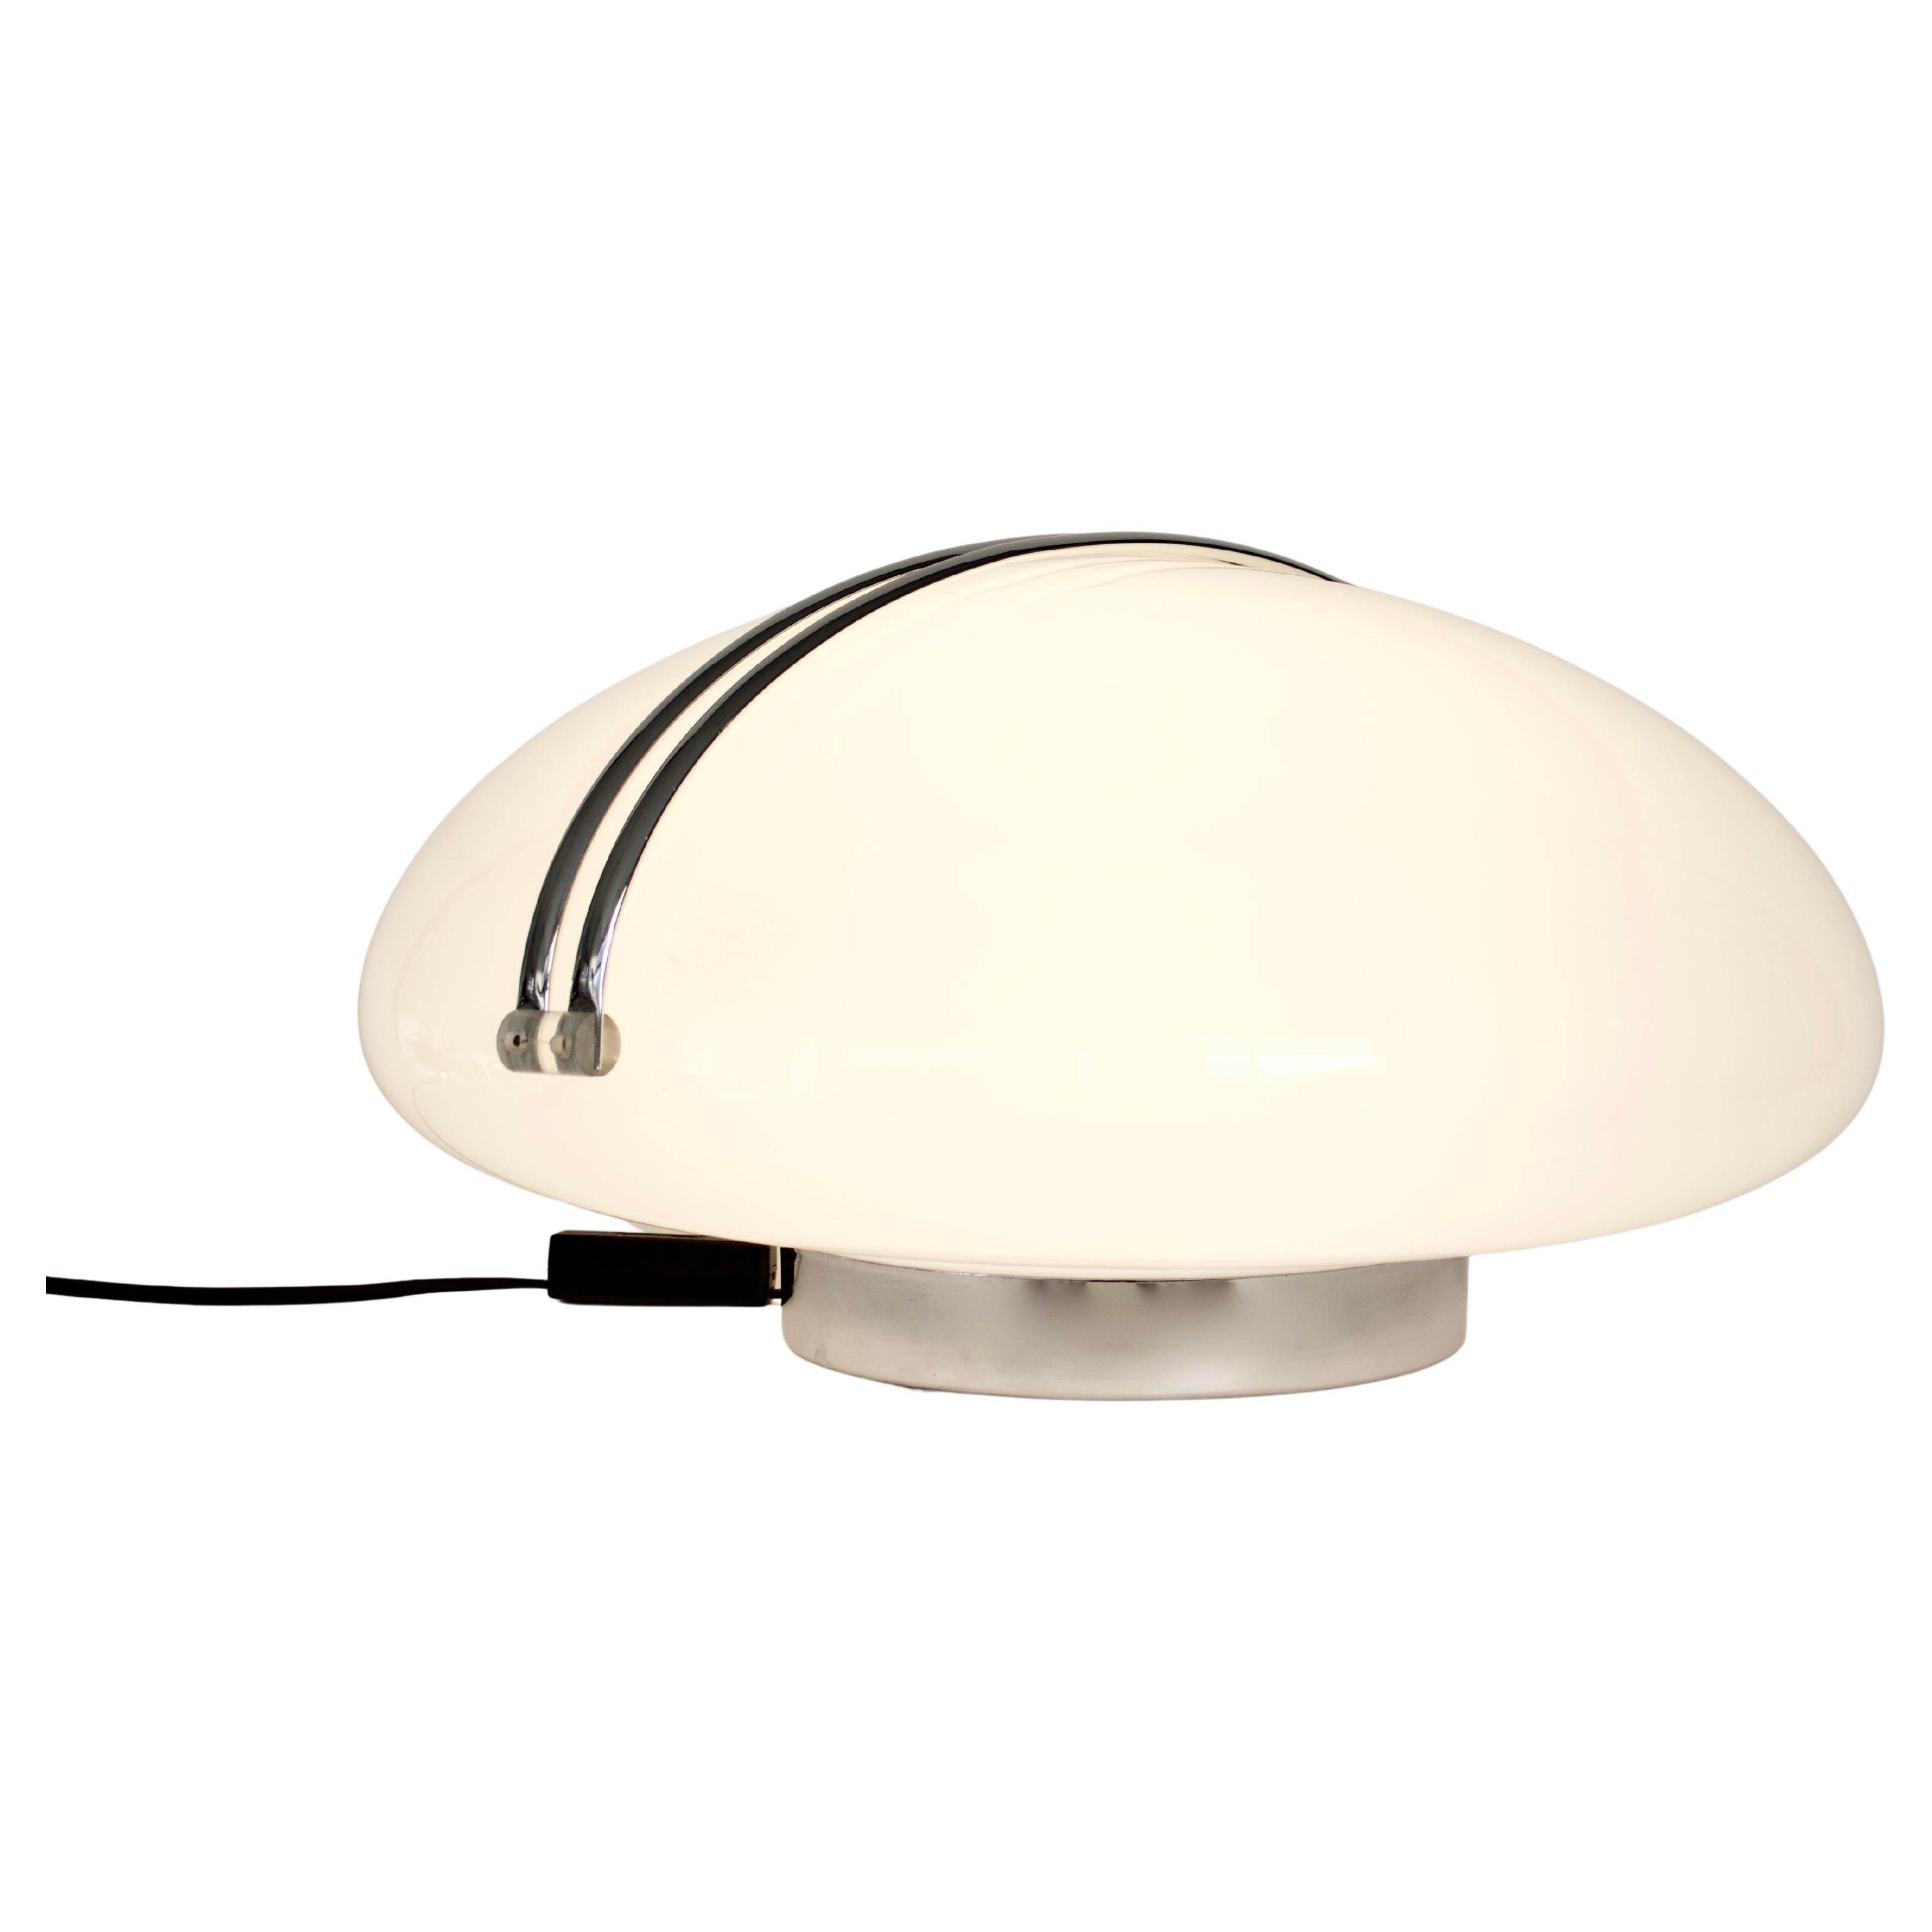 Lampe de table ou lampadaire Il Cammino d'Angelo Mangiarotti, conçue pour Iter Elettronica en 1972.
Verre opalin avec base chromée. 
L'interrupteur de la lampe fait office de variateur de lumière, ce qui permet d'obtenir une lumière forte ou